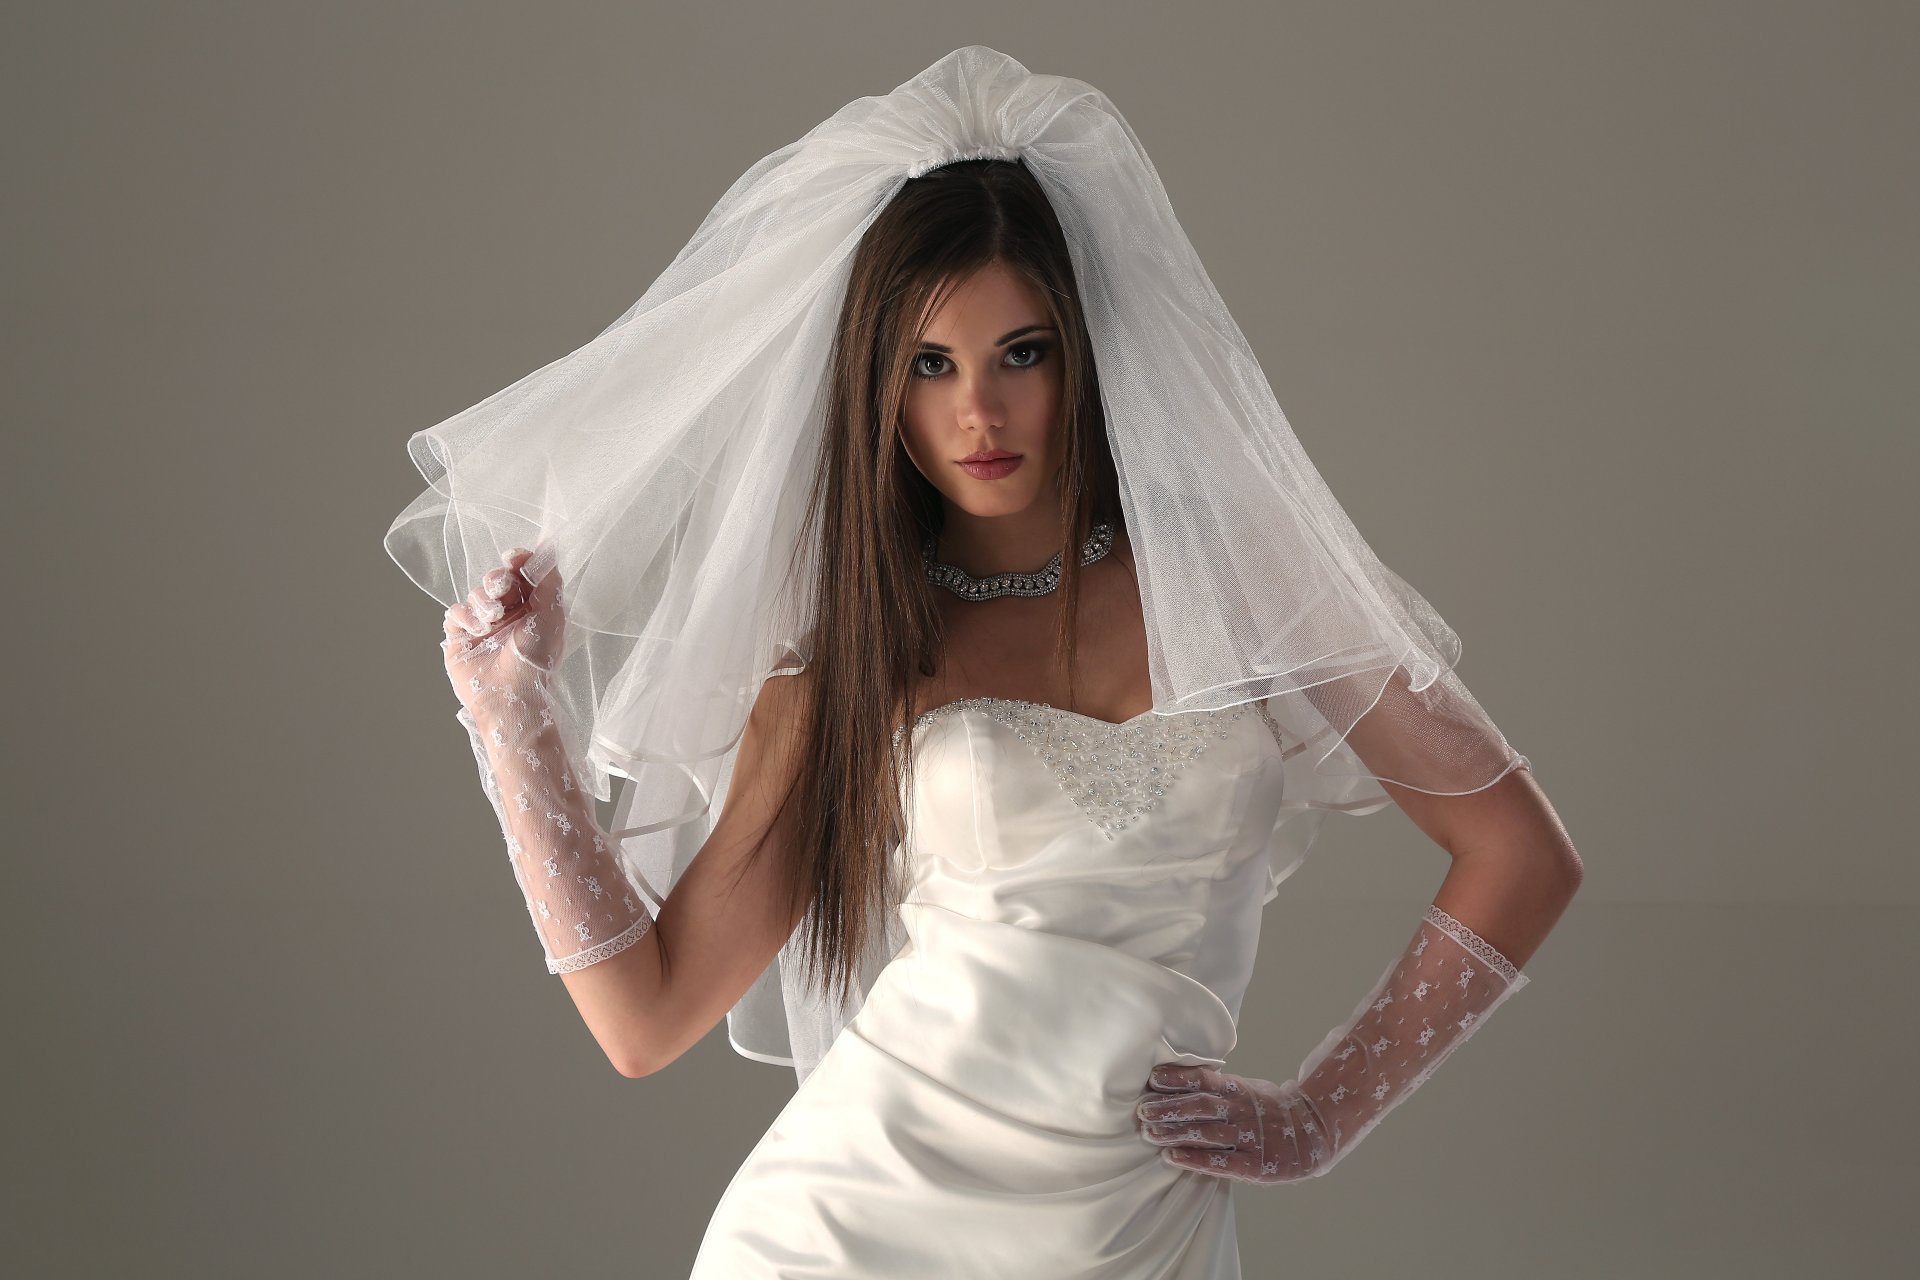 Фата для свадебного платья